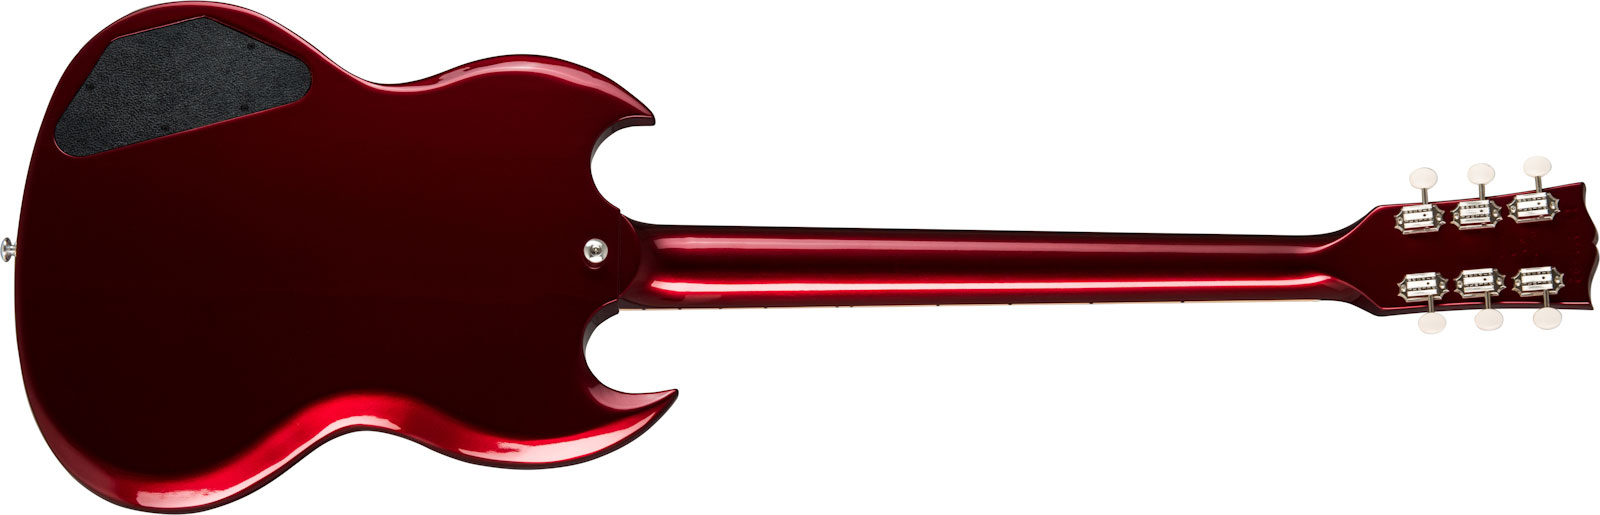 Gibson Sp Special Original 2p90 Ht Rw - Vintage Sparkling Burgundy - Retro-Rock-E-Gitarre - Variation 1